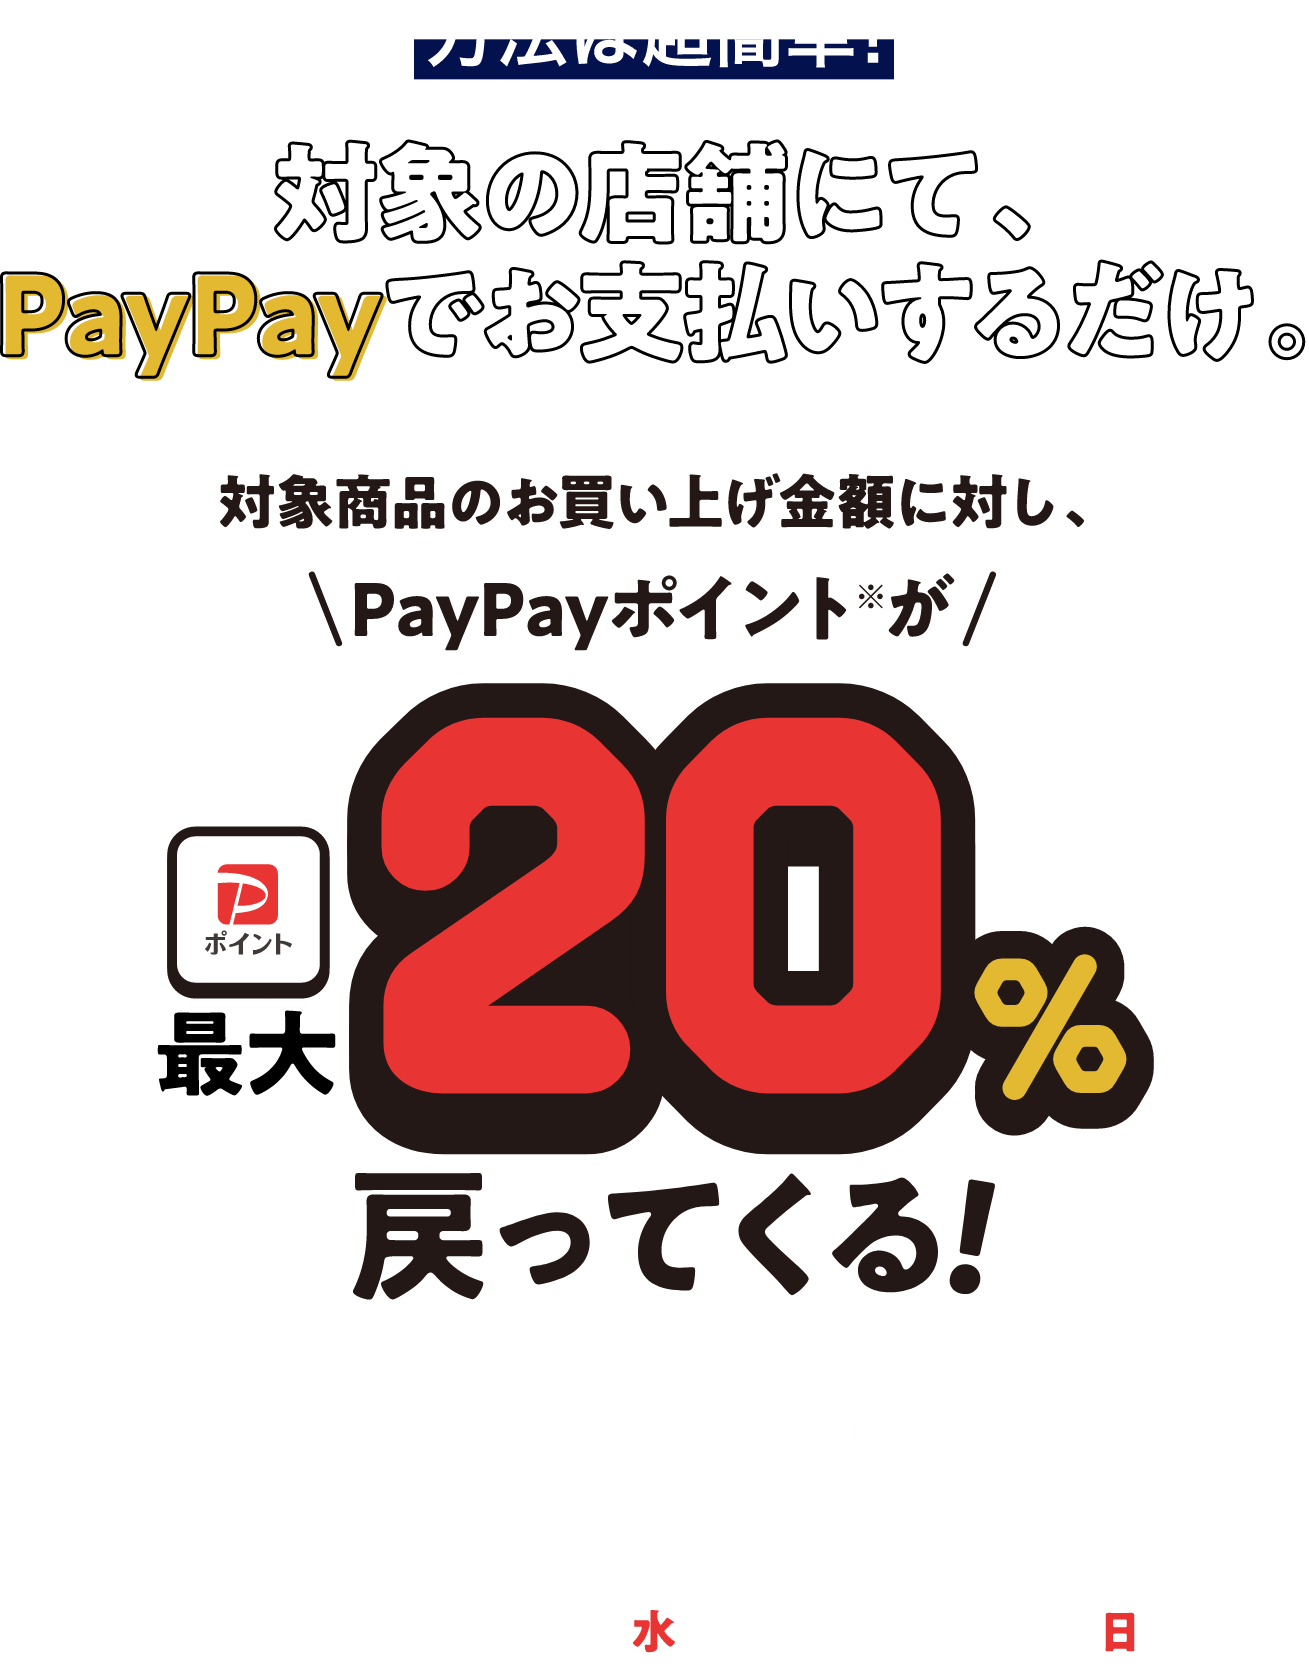  方法は超簡単!対象の店舗にて、PayPayでお支払いするだけ。対象商品のお買い上げ金額に対し、PayPayポイントが最大20%戻ってくる!  ※付与上限はお一人様、期間中に最大6,000円相当まで。 ※出金・譲渡はできません。PayPay/PayPayカード公式ストアでも利用できます。 キャンペーン期間 2023年3月1日(水)〜4月30日(日)